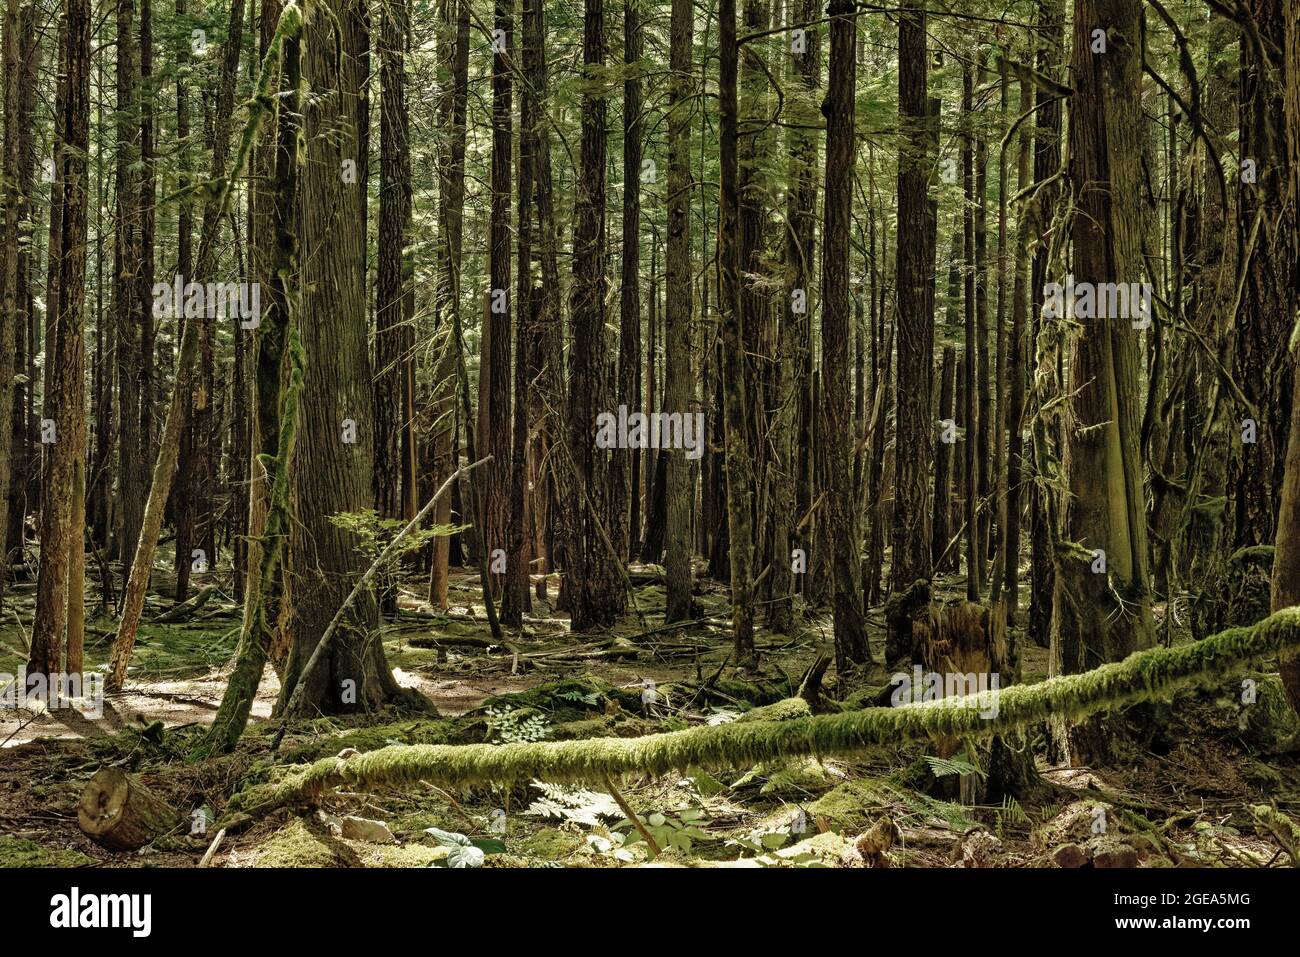 Forest scenes - Squamish, B.C. Stock Photo